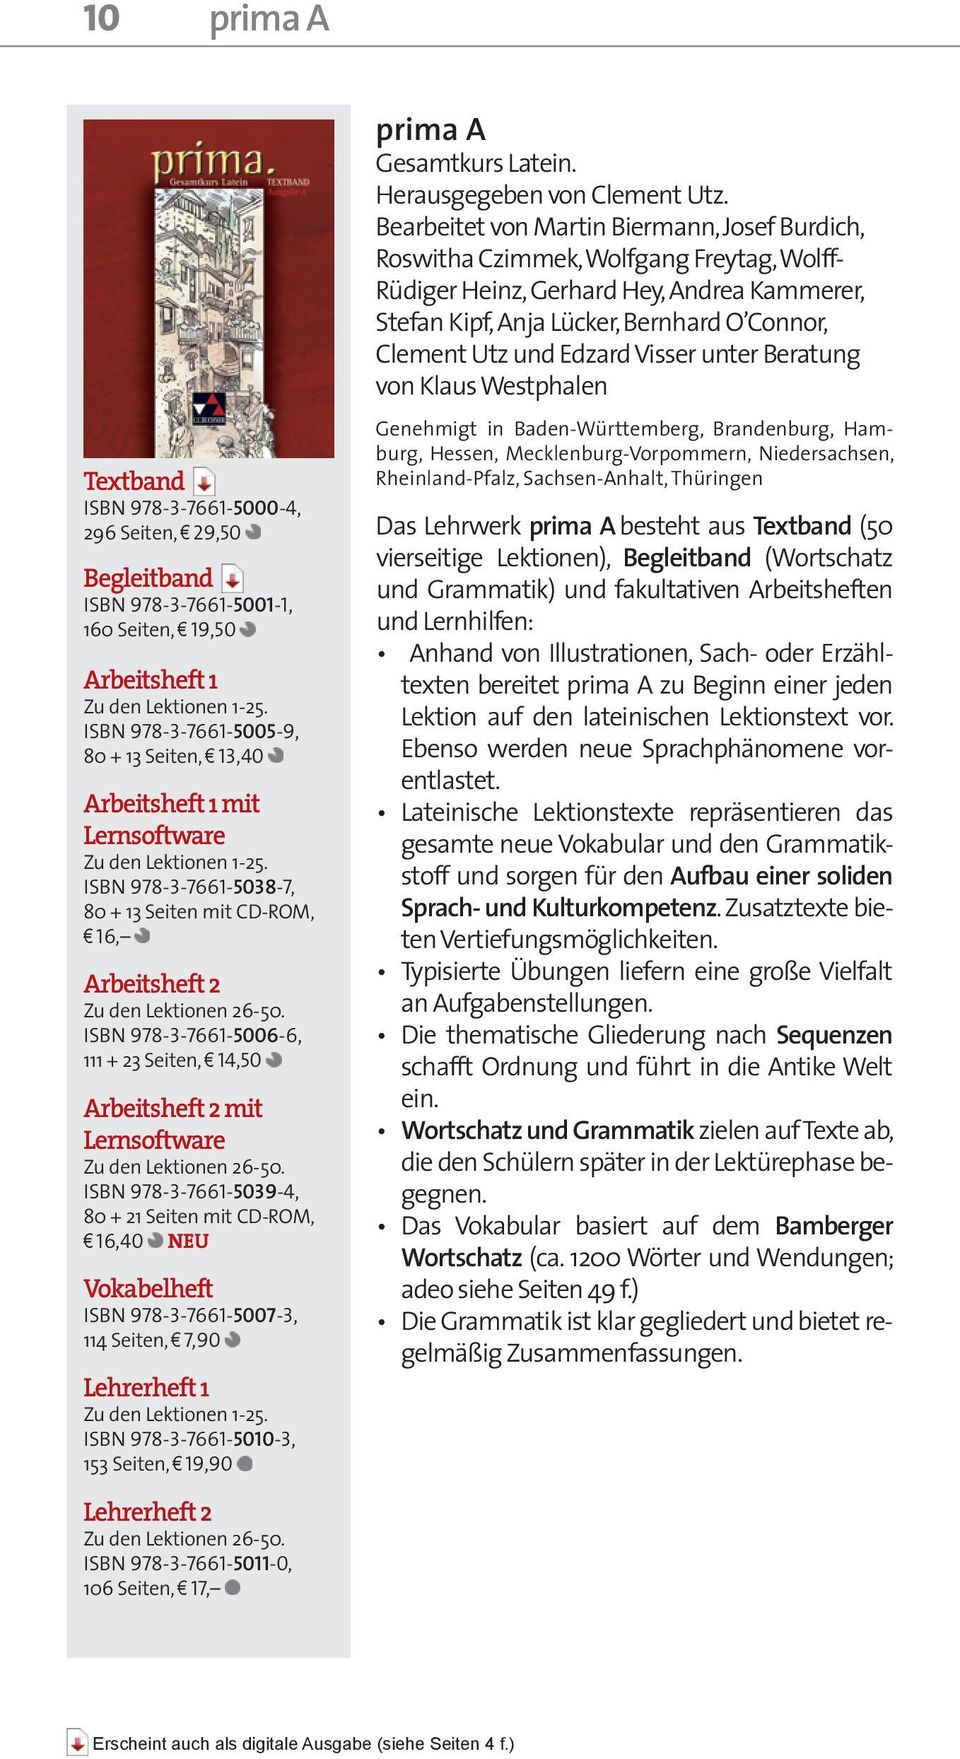 ISBN 978-3-7661-5006-6, 111 + 23 Seiten, 14,50 Arbeitsheft 2 mit Lernsoftware Zu den Lektionen 26-50.